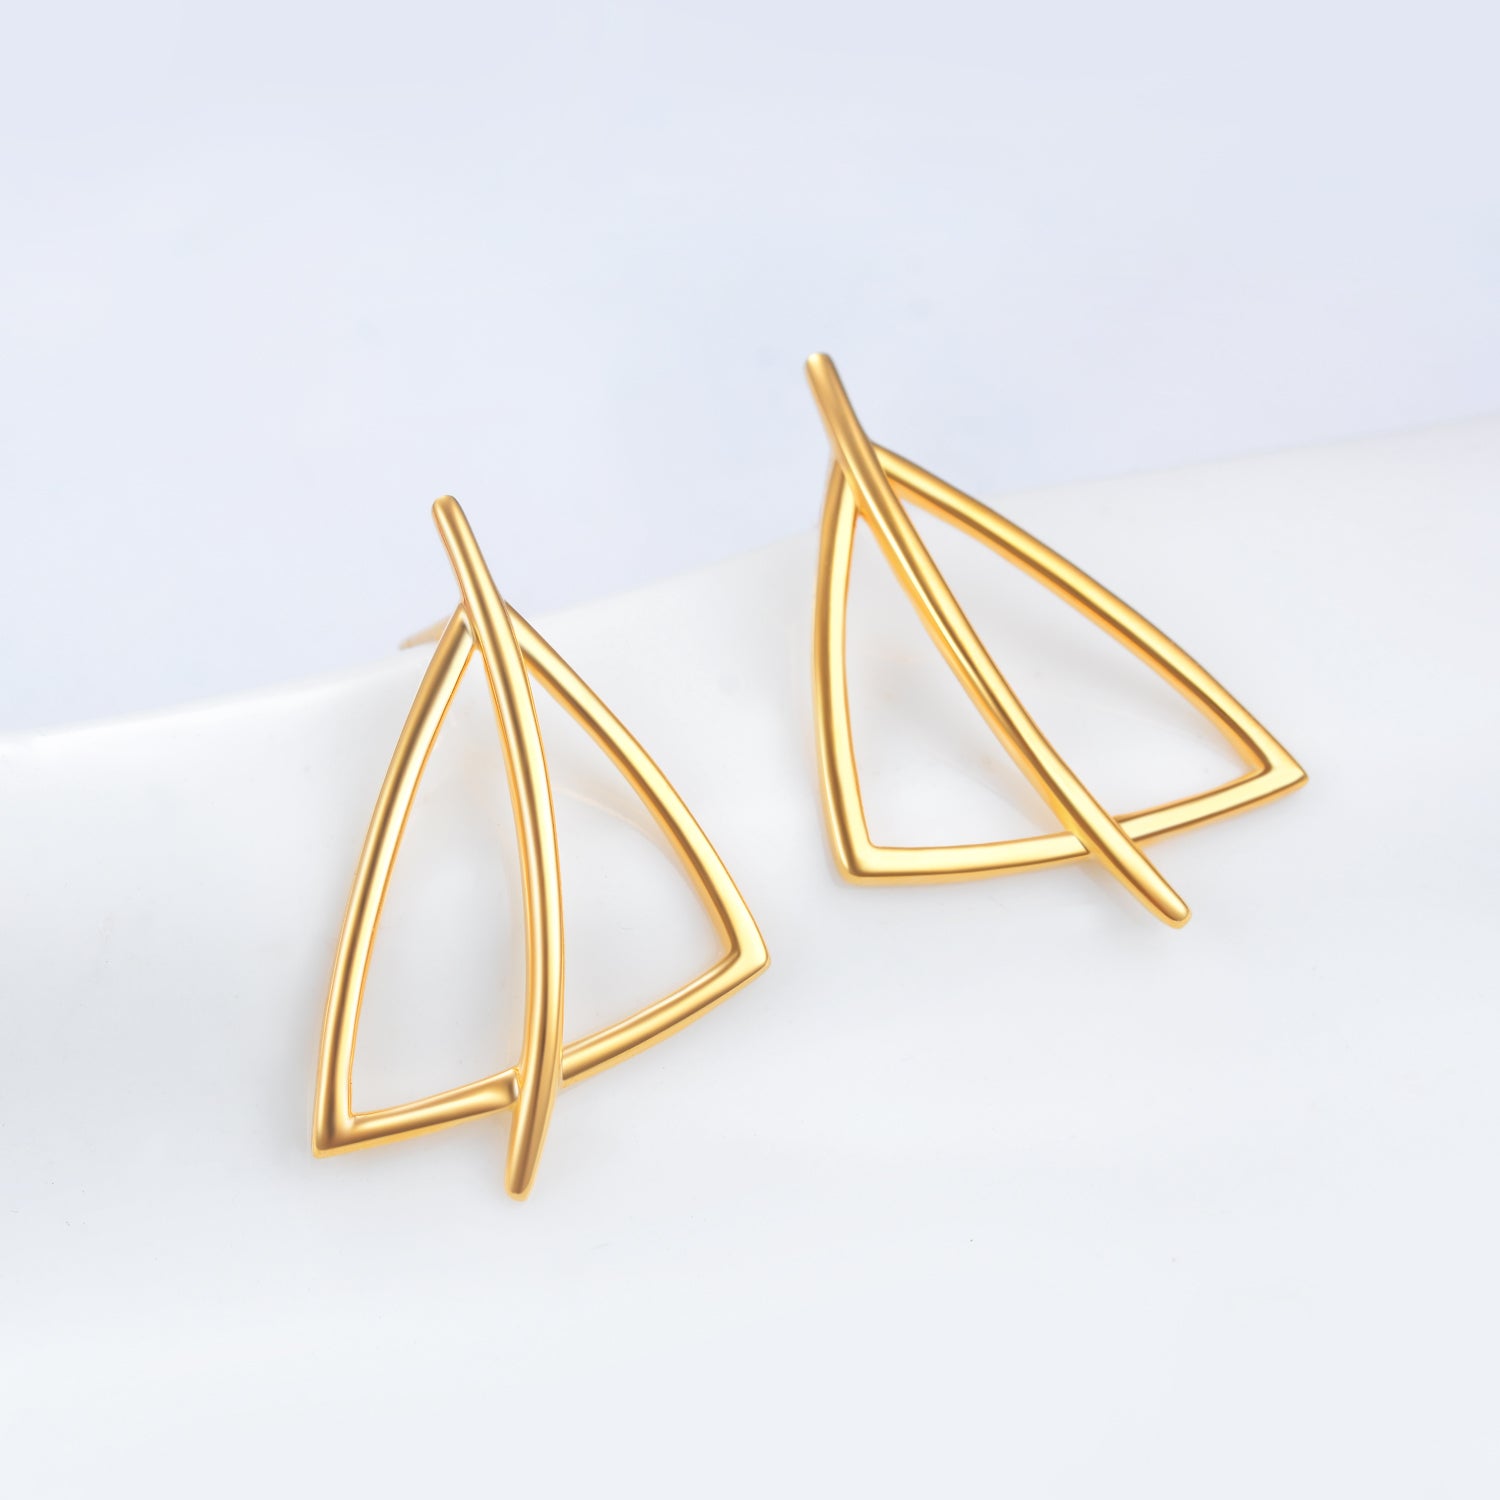 Silver Wire Weave Earrings Geometric Gold Plating Triangle Shape Earrings